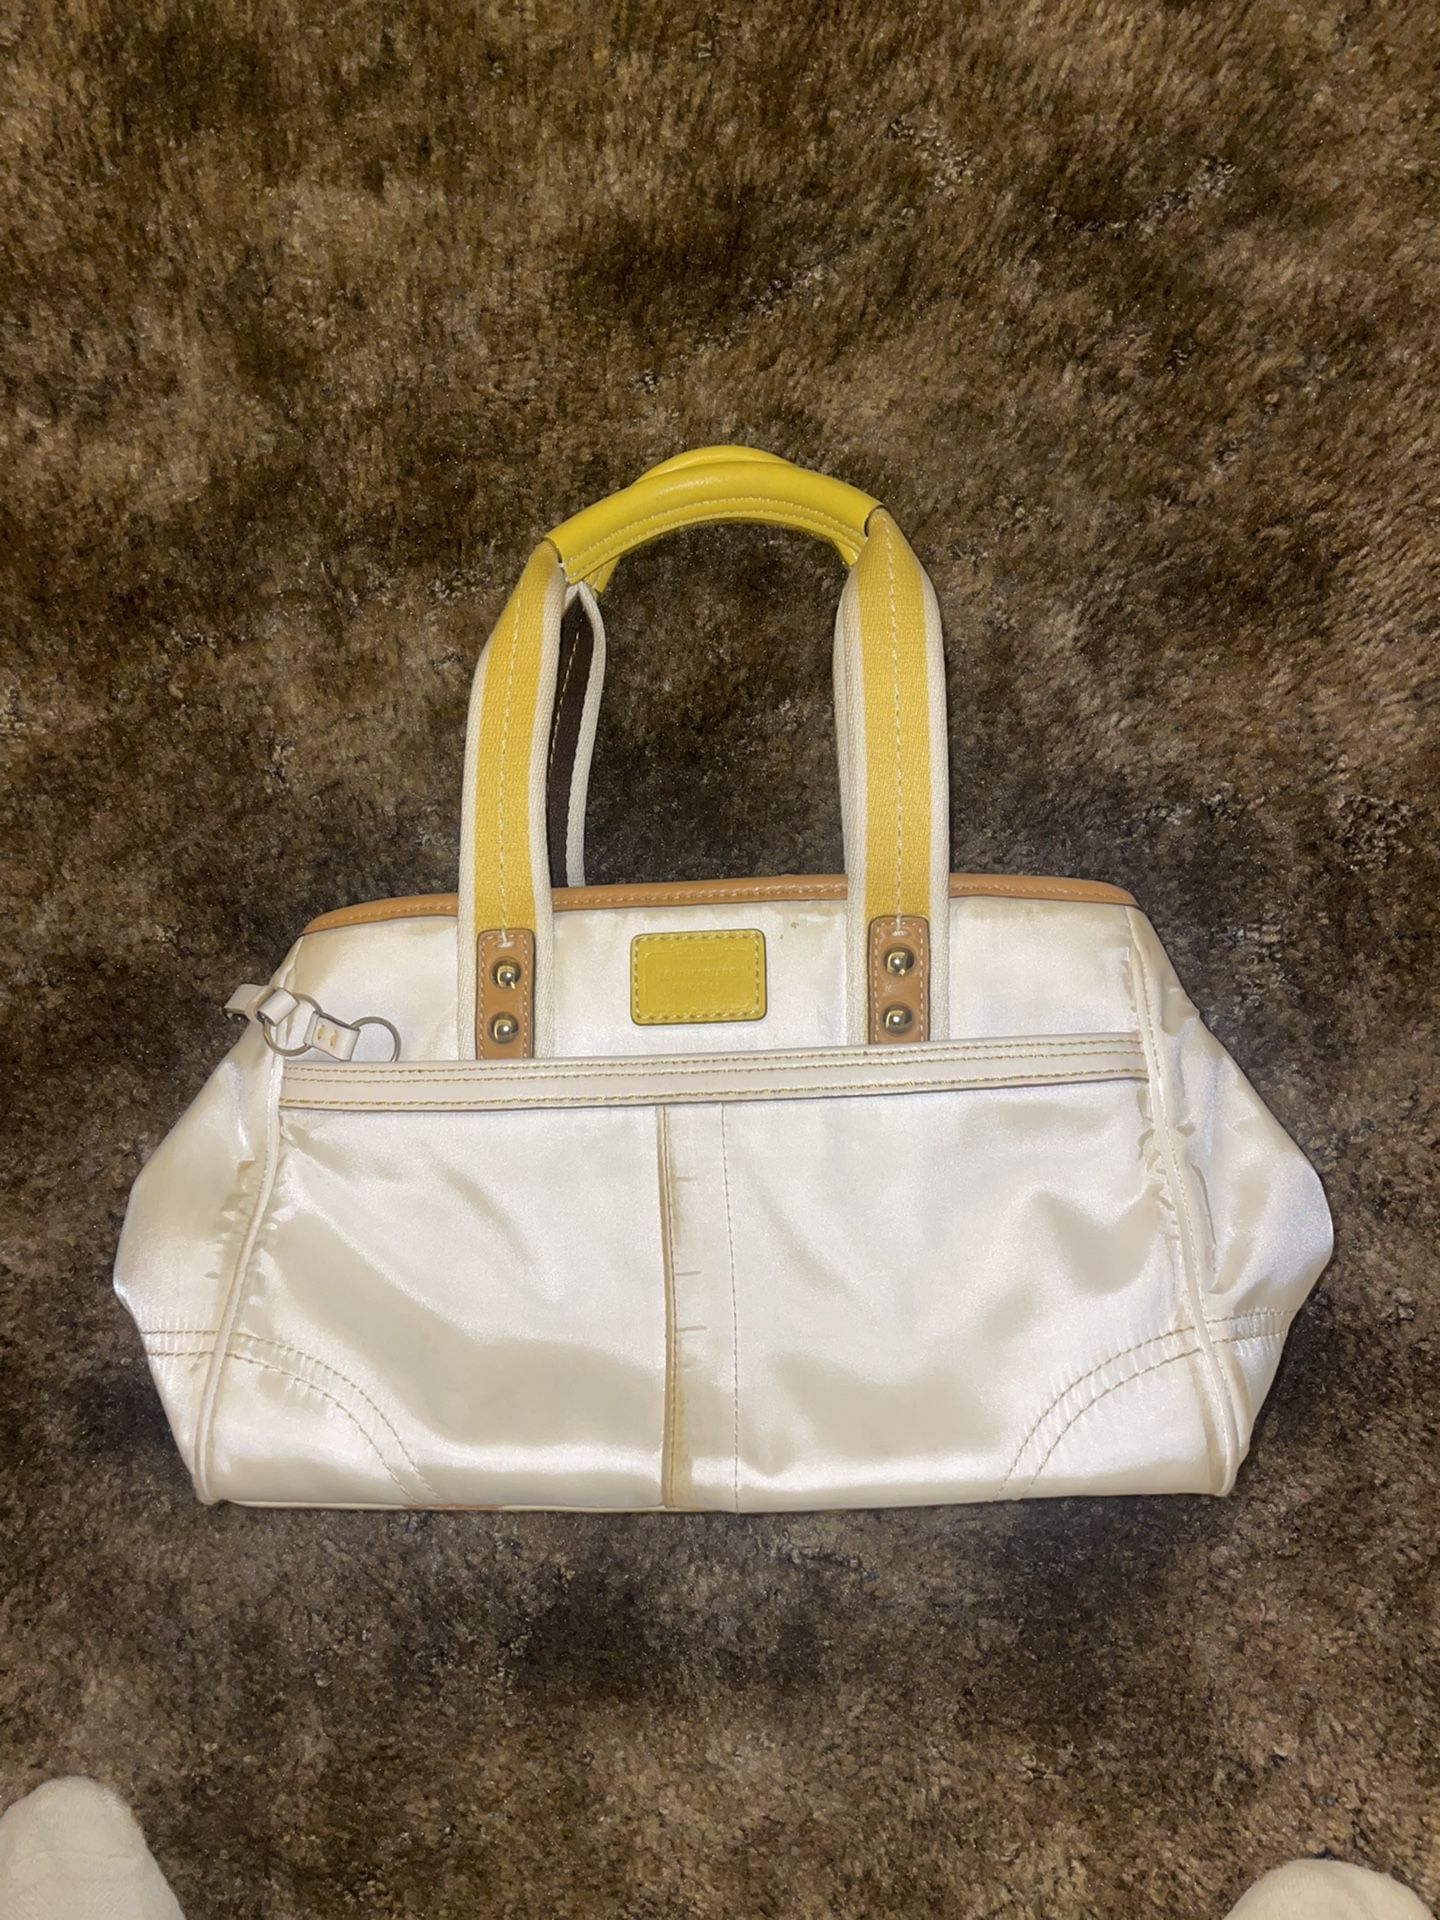 Coach purse cute small bag 